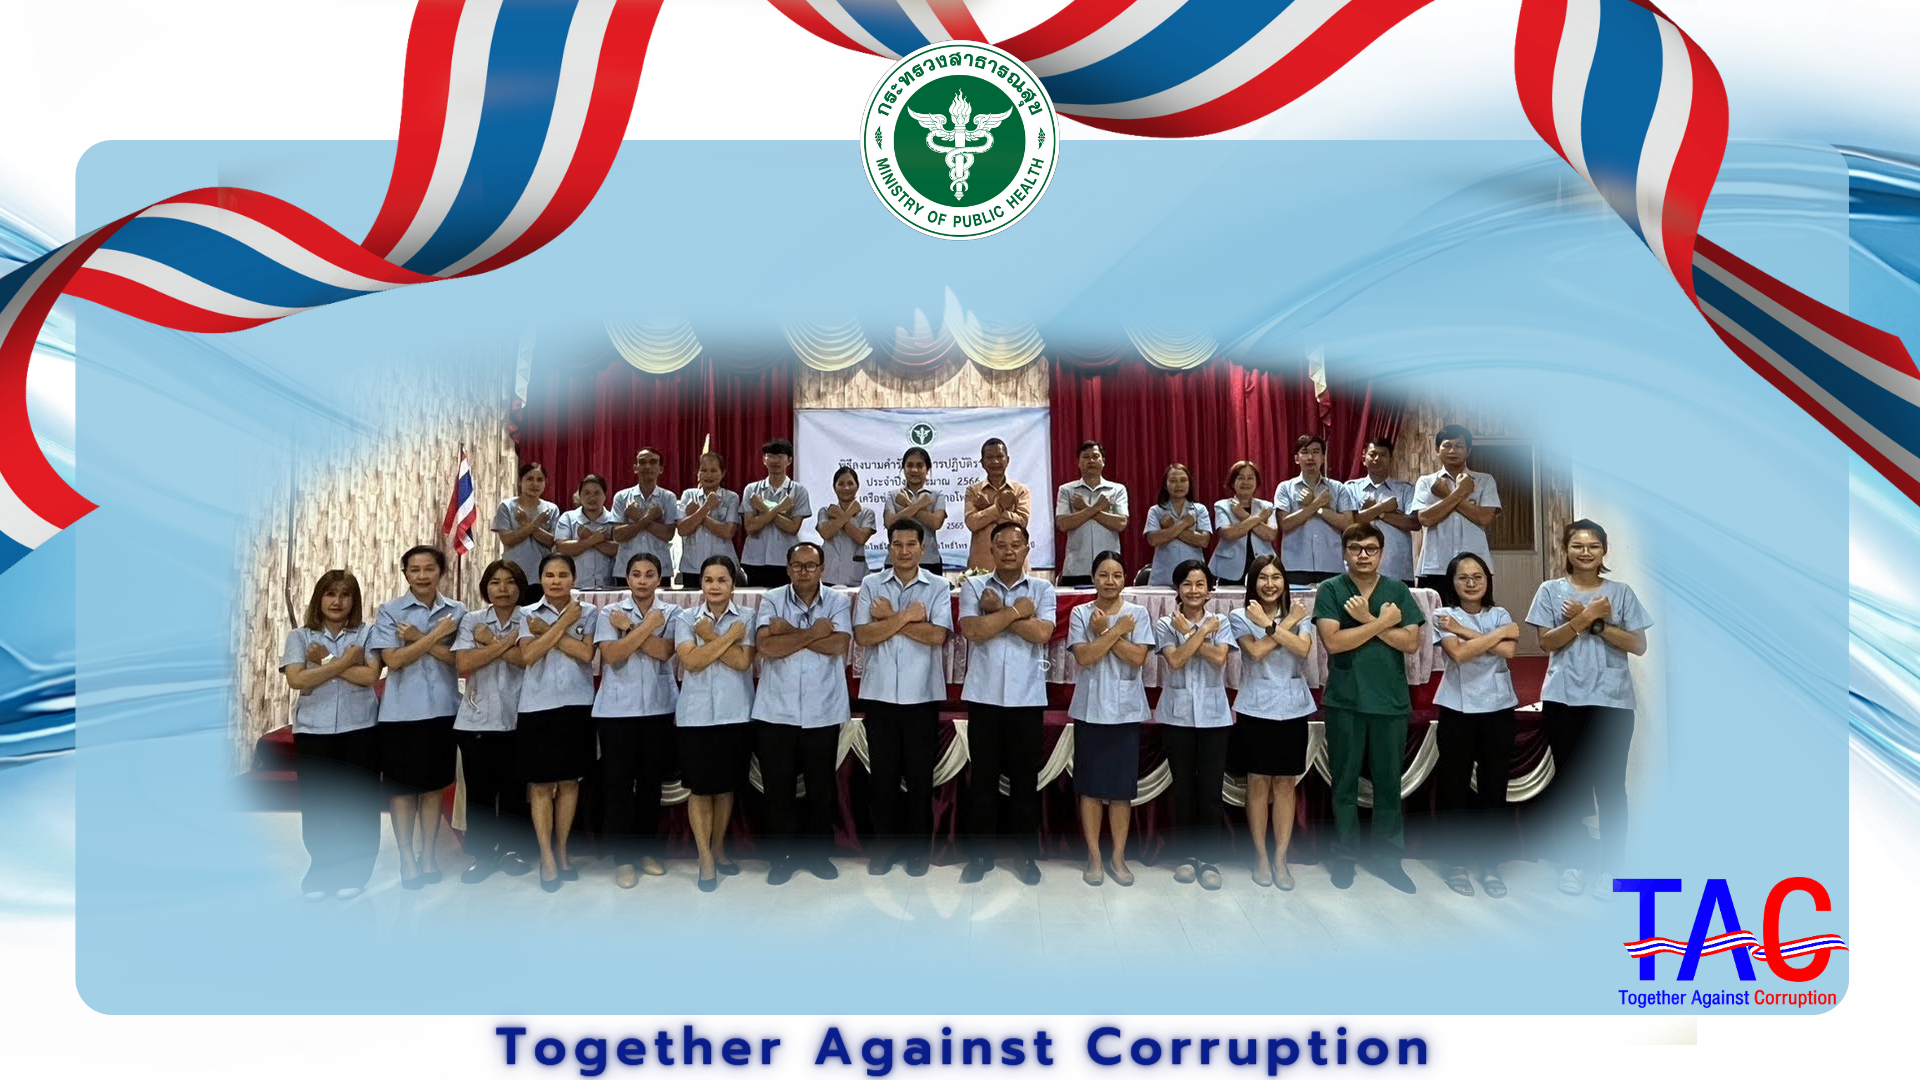 ประกาศเจตนารมณ์การต่อต้านการทุจริต “กระทรวงสาธารณสุขใสสะอาด ร่วมต้านทุจริต (MOPH Together Against Corruption)” ประจำปีงบประมาณ พ.ศ. 2566